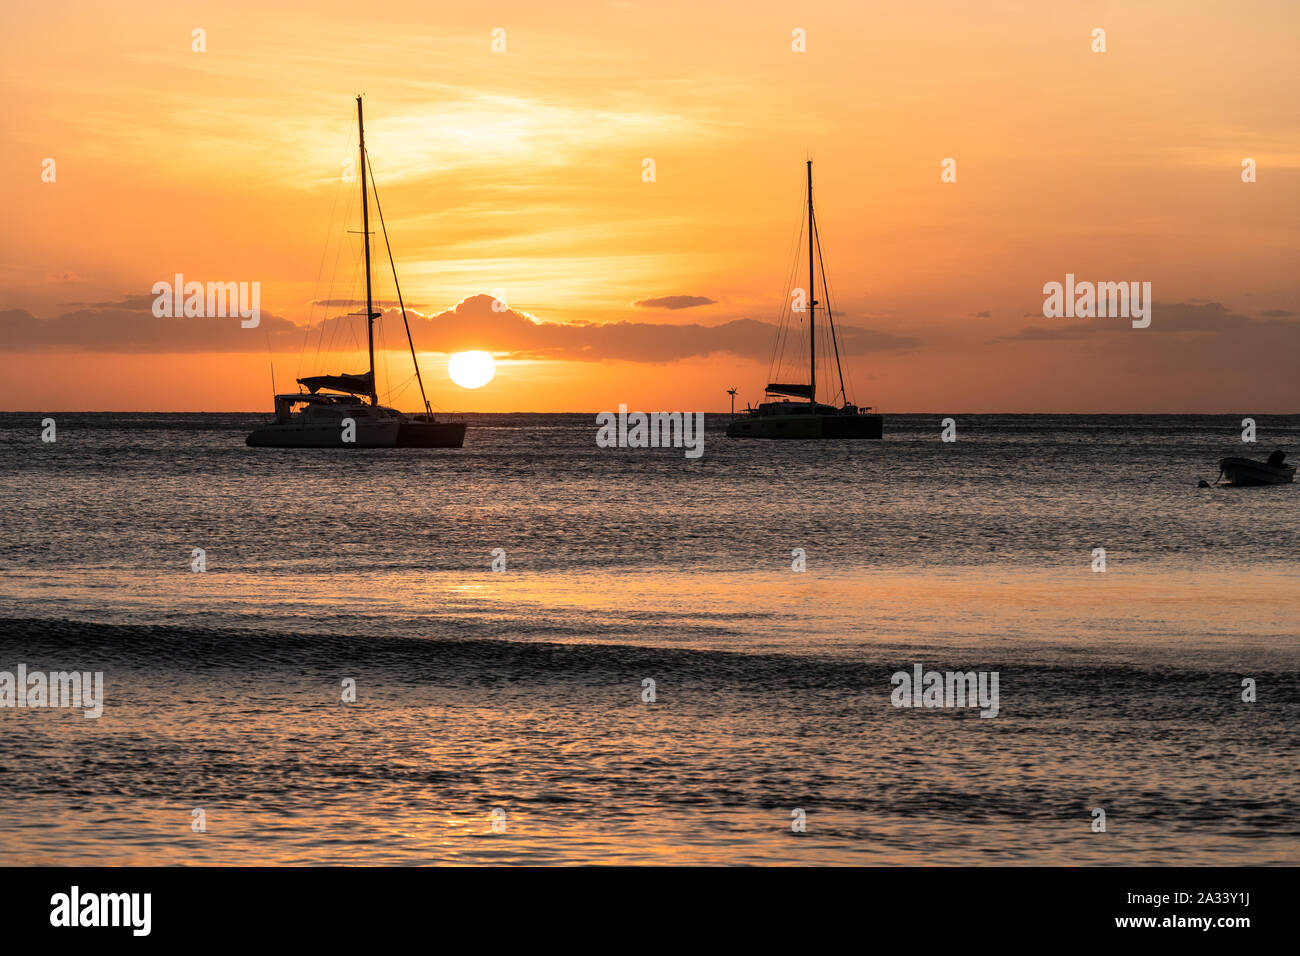 Coucher de soleil sur le voilier catamaran deux Yasawa island dans les îles Fidji, dans l'océan pacifique Banque D'Images